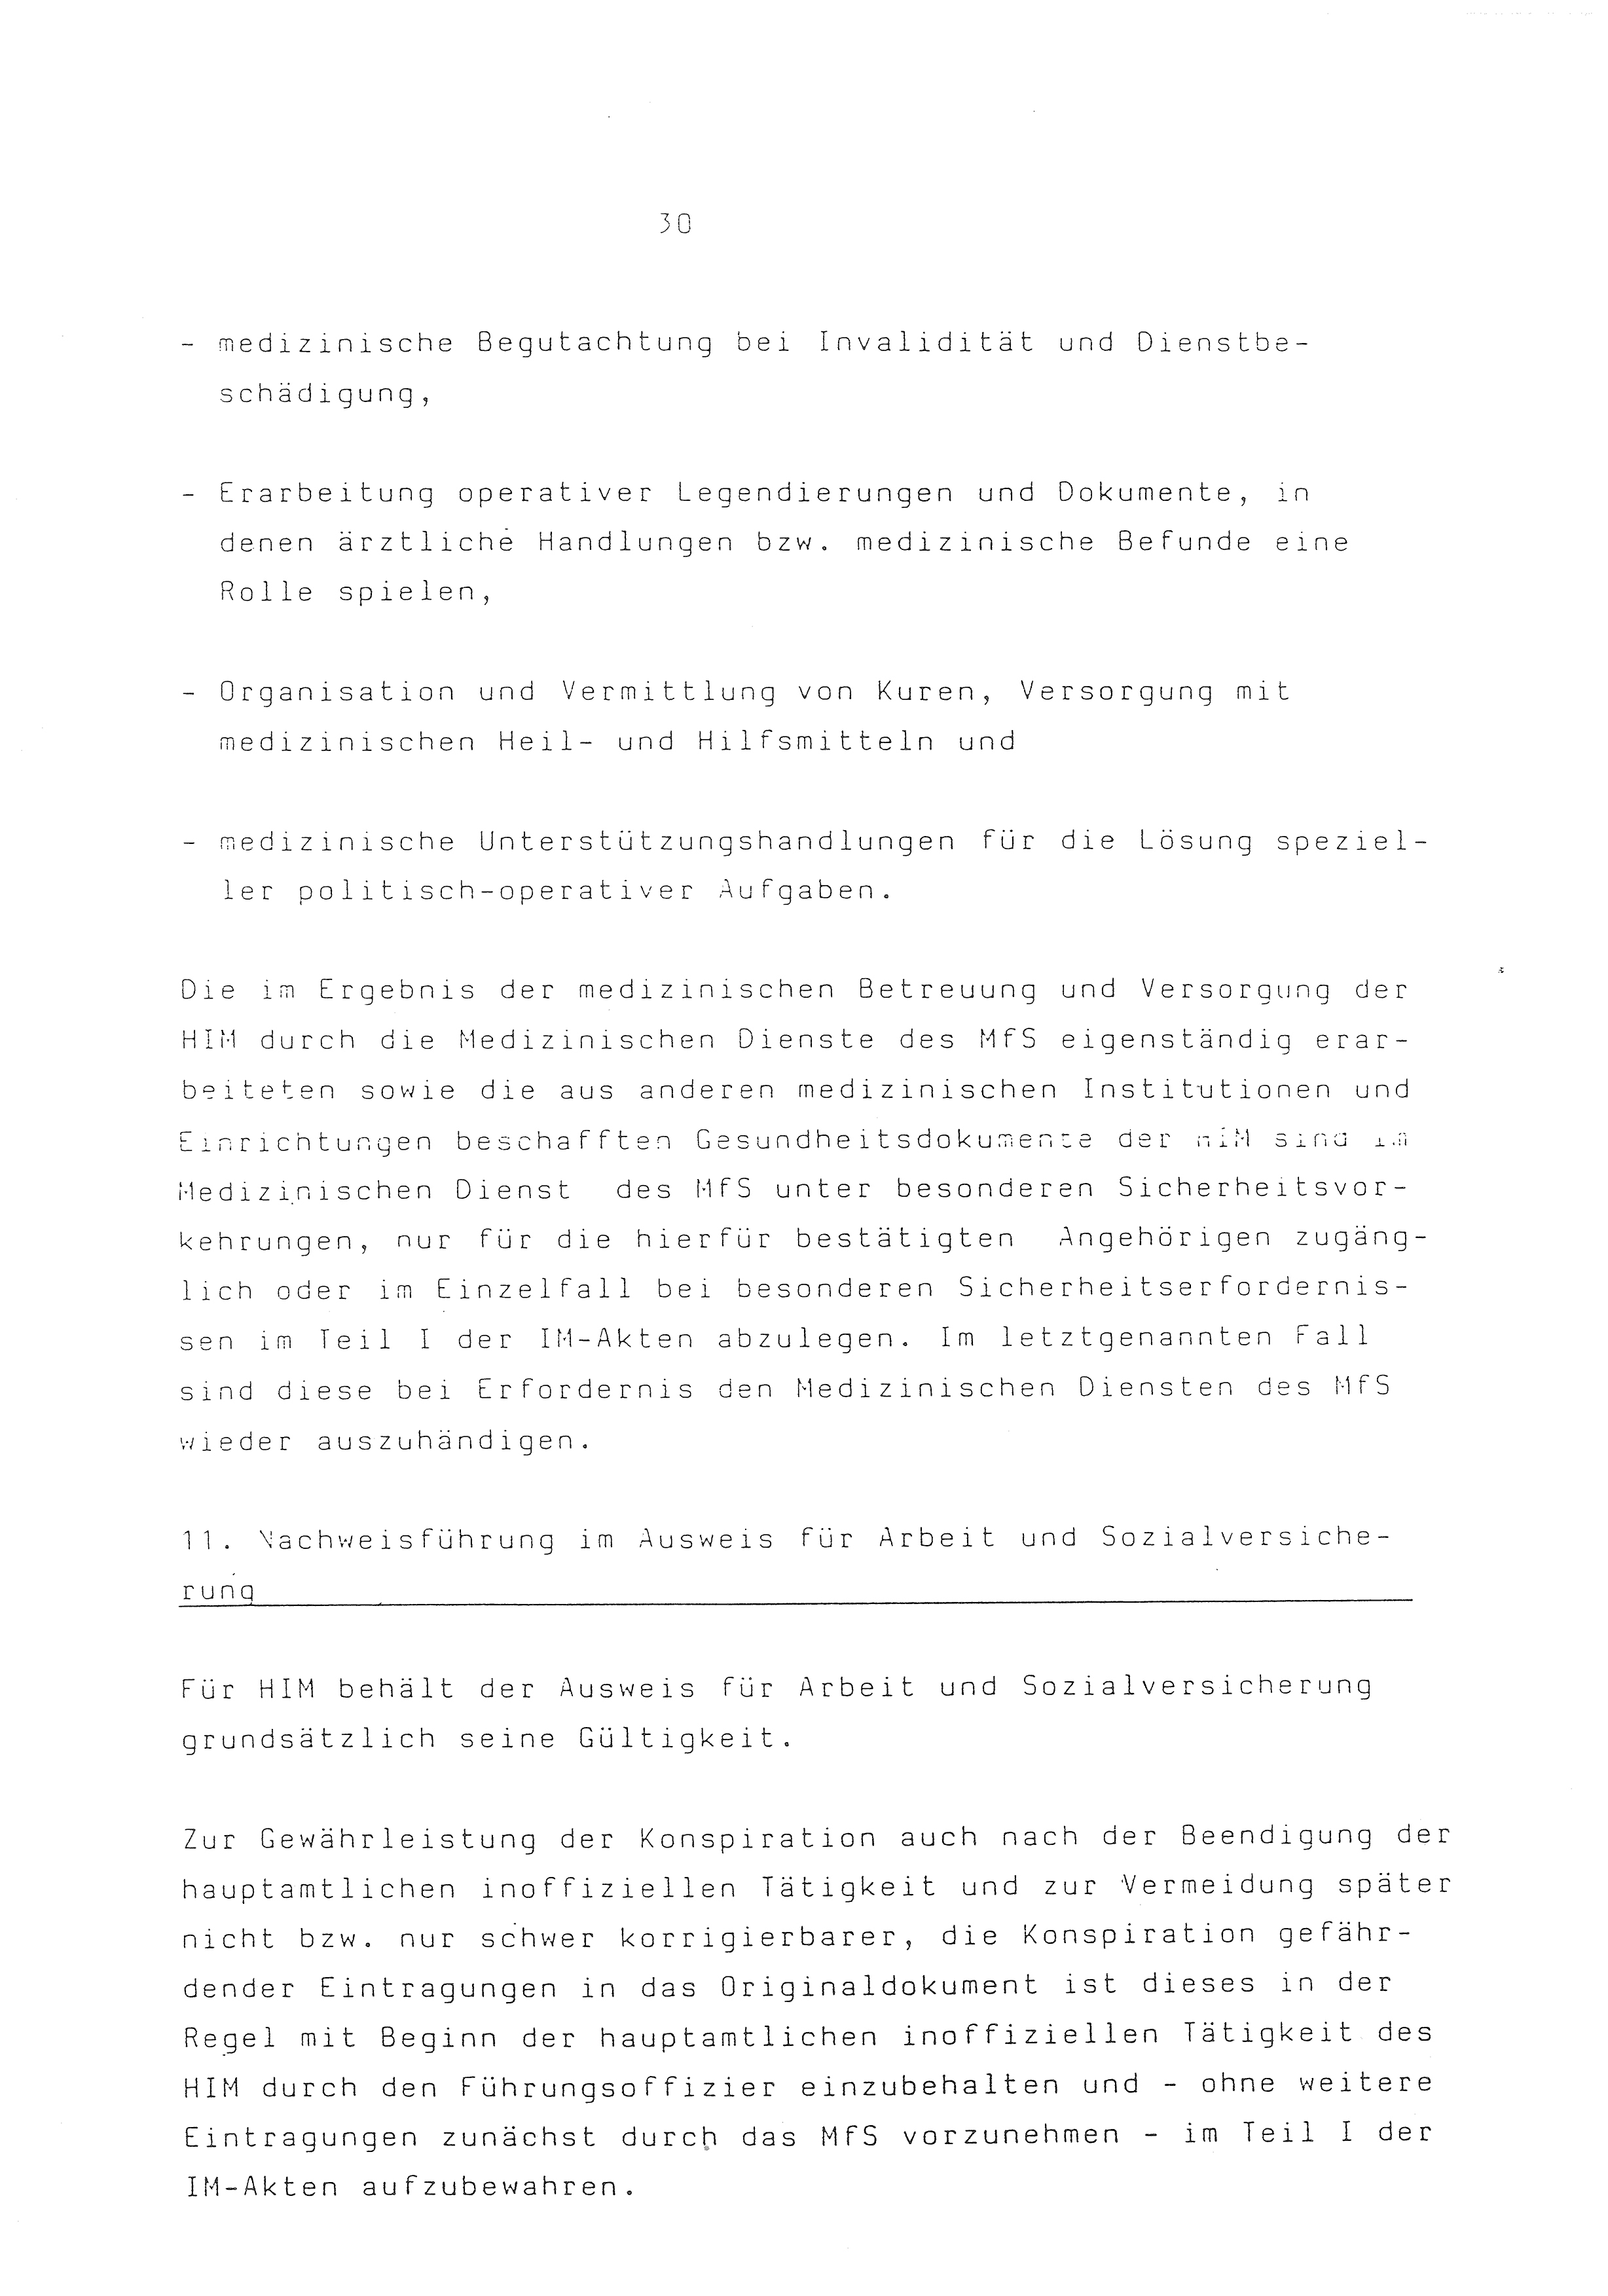 2. Durchführungsbestimmung zur Richtlinie 1/79 über die Arbeit mit hauptamtlichen Mitarbeitern des MfS (HIM), Deutsche Demokratische Republik (DDR), Ministerium für Staatssicherheit (MfS), Der Minister (Mielke), Geheime Verschlußsache (GVS) ooo8-44/86, Berlin 1986, Seite 30 (2. DB RL 1/79 DDR MfS Min. GVS ooo8-44/86 1986, S. 30)